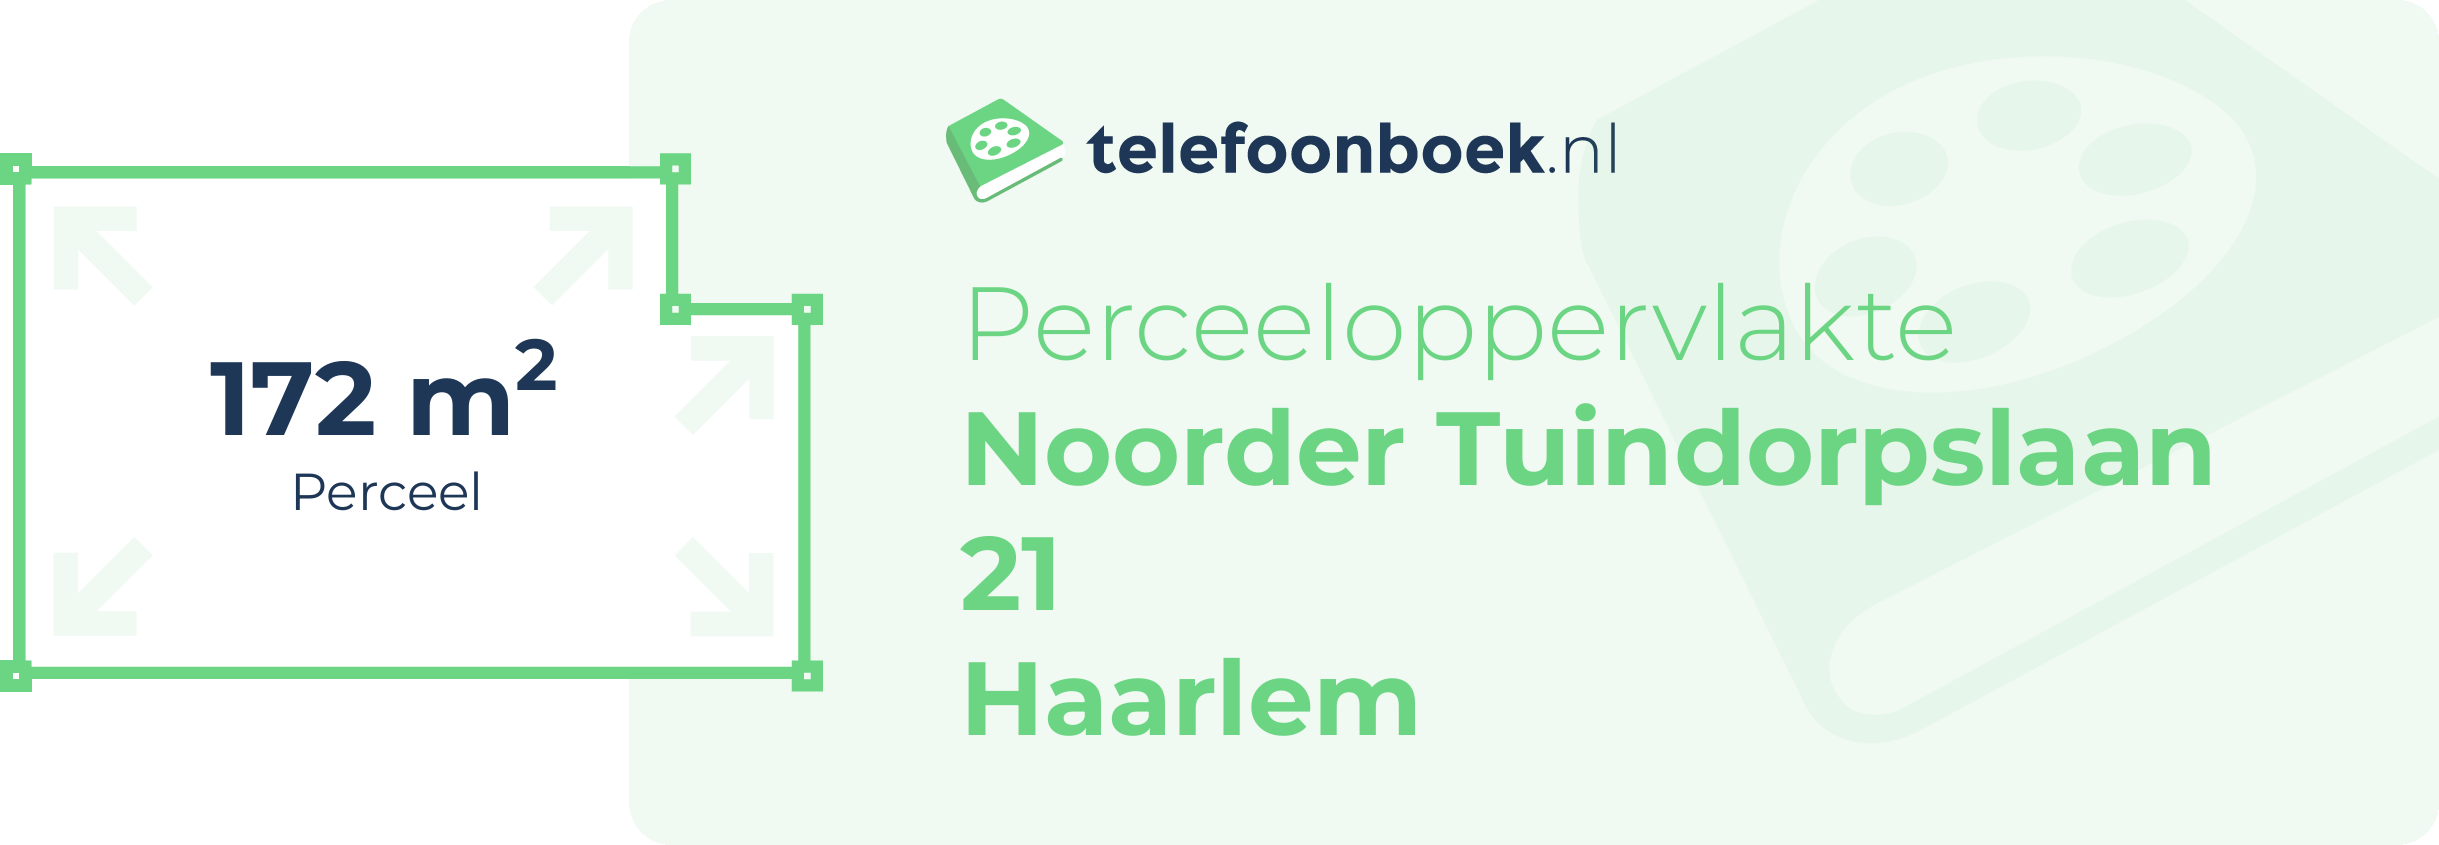 Perceeloppervlakte Noorder Tuindorpslaan 21 Haarlem